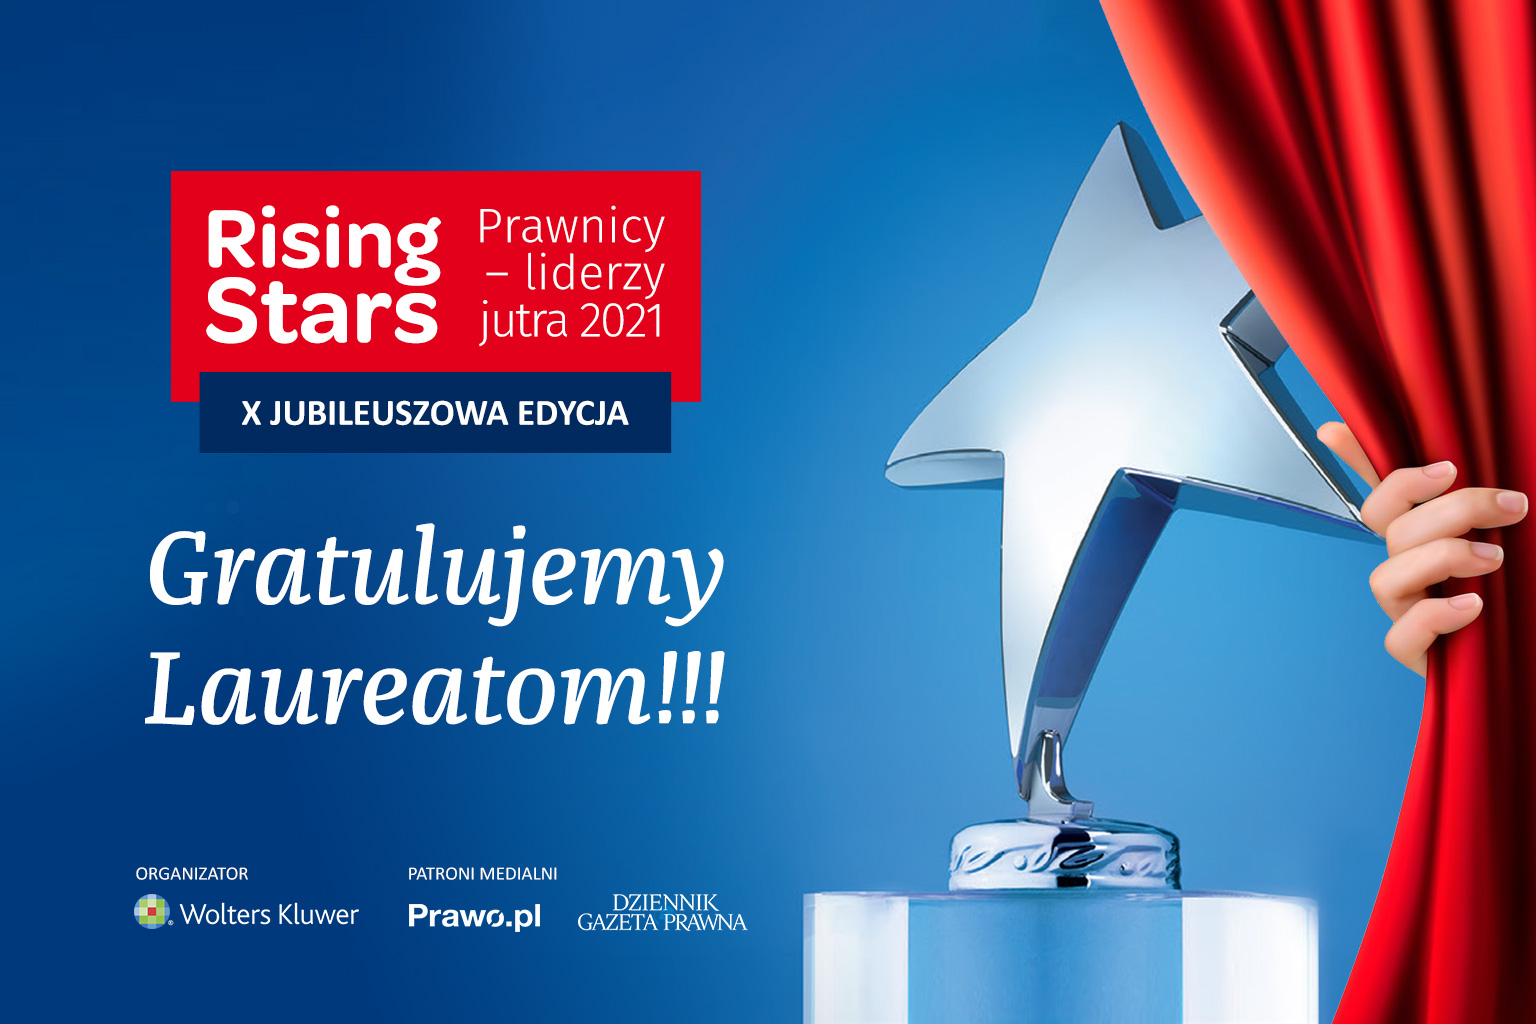 Konkurs Rising Stars 2021 rozstrzygnięty. Prawnicze gwiazdy nagrodzone!